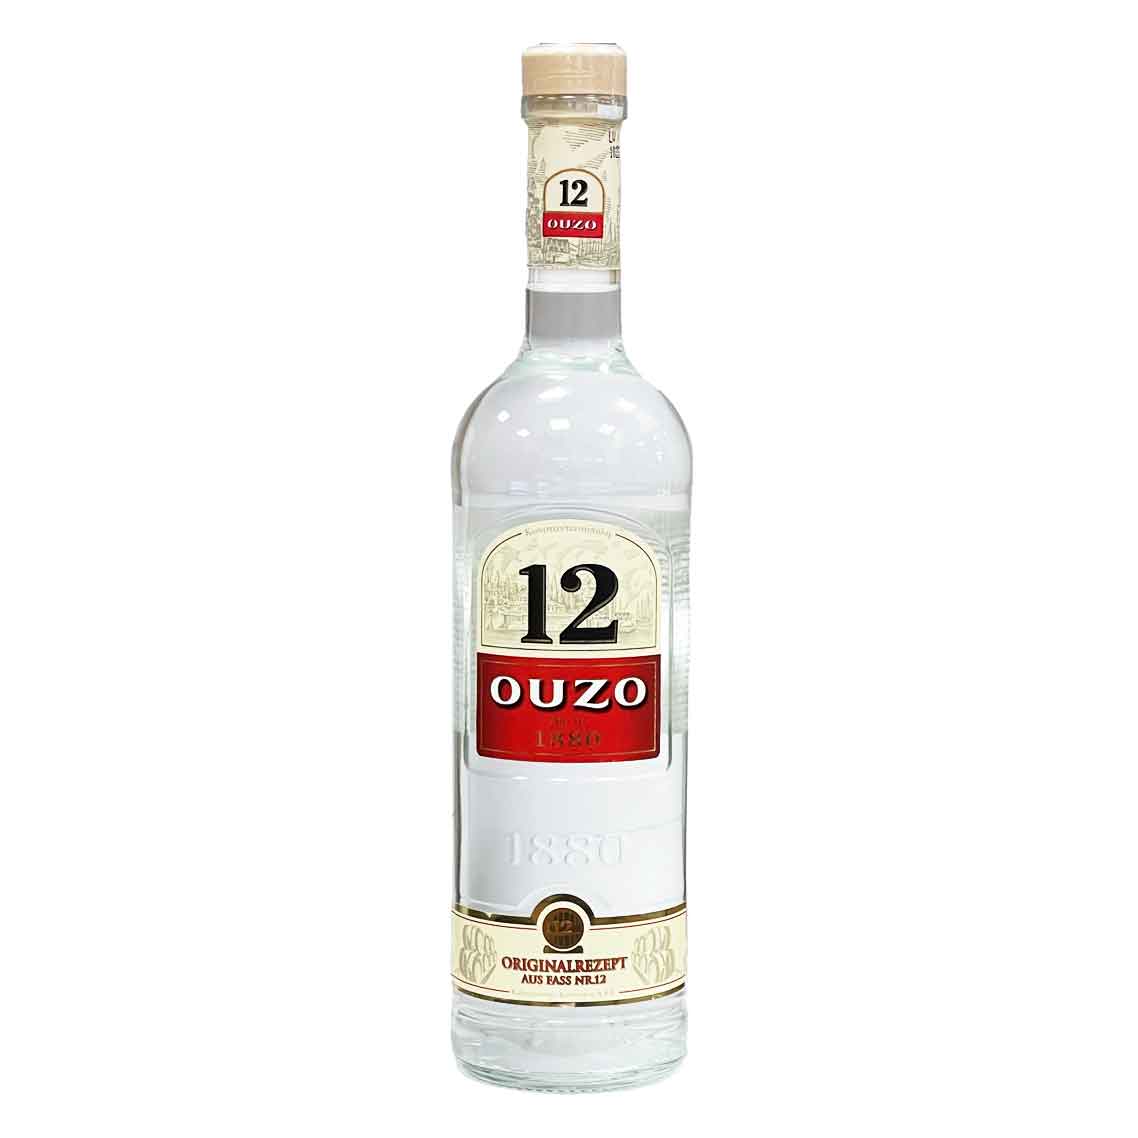 12 38% Ouzo Viel-Durst Vol. (0,7l) |